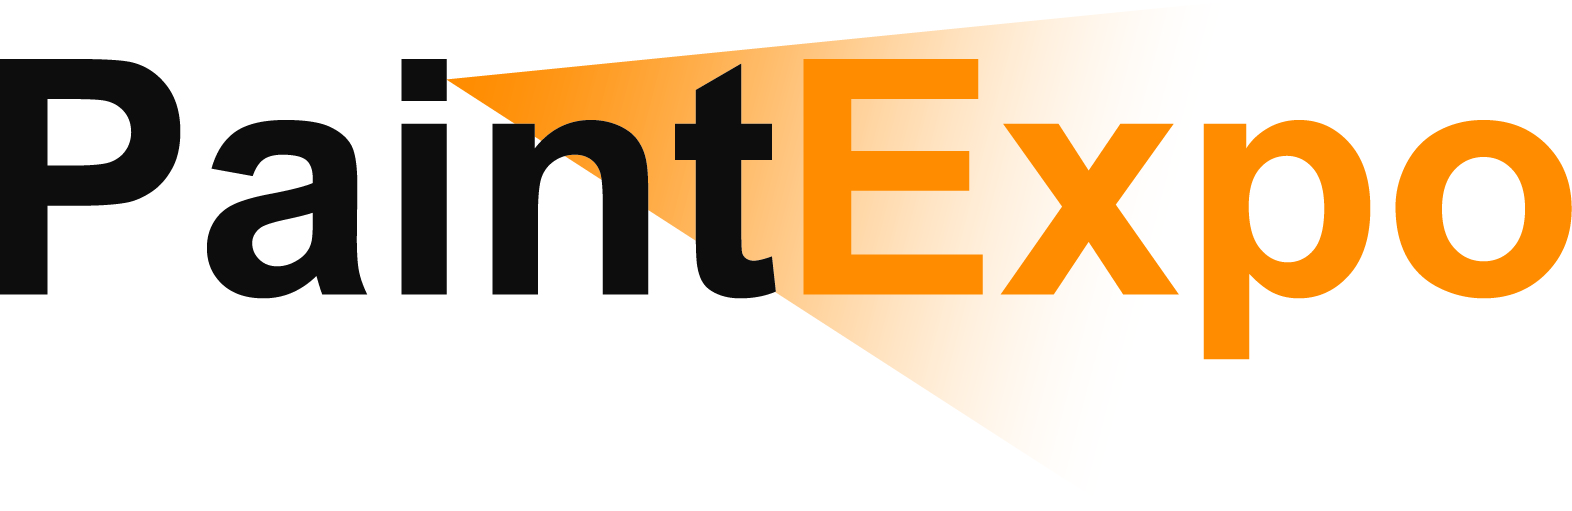 PaintExpo 2018 Logo